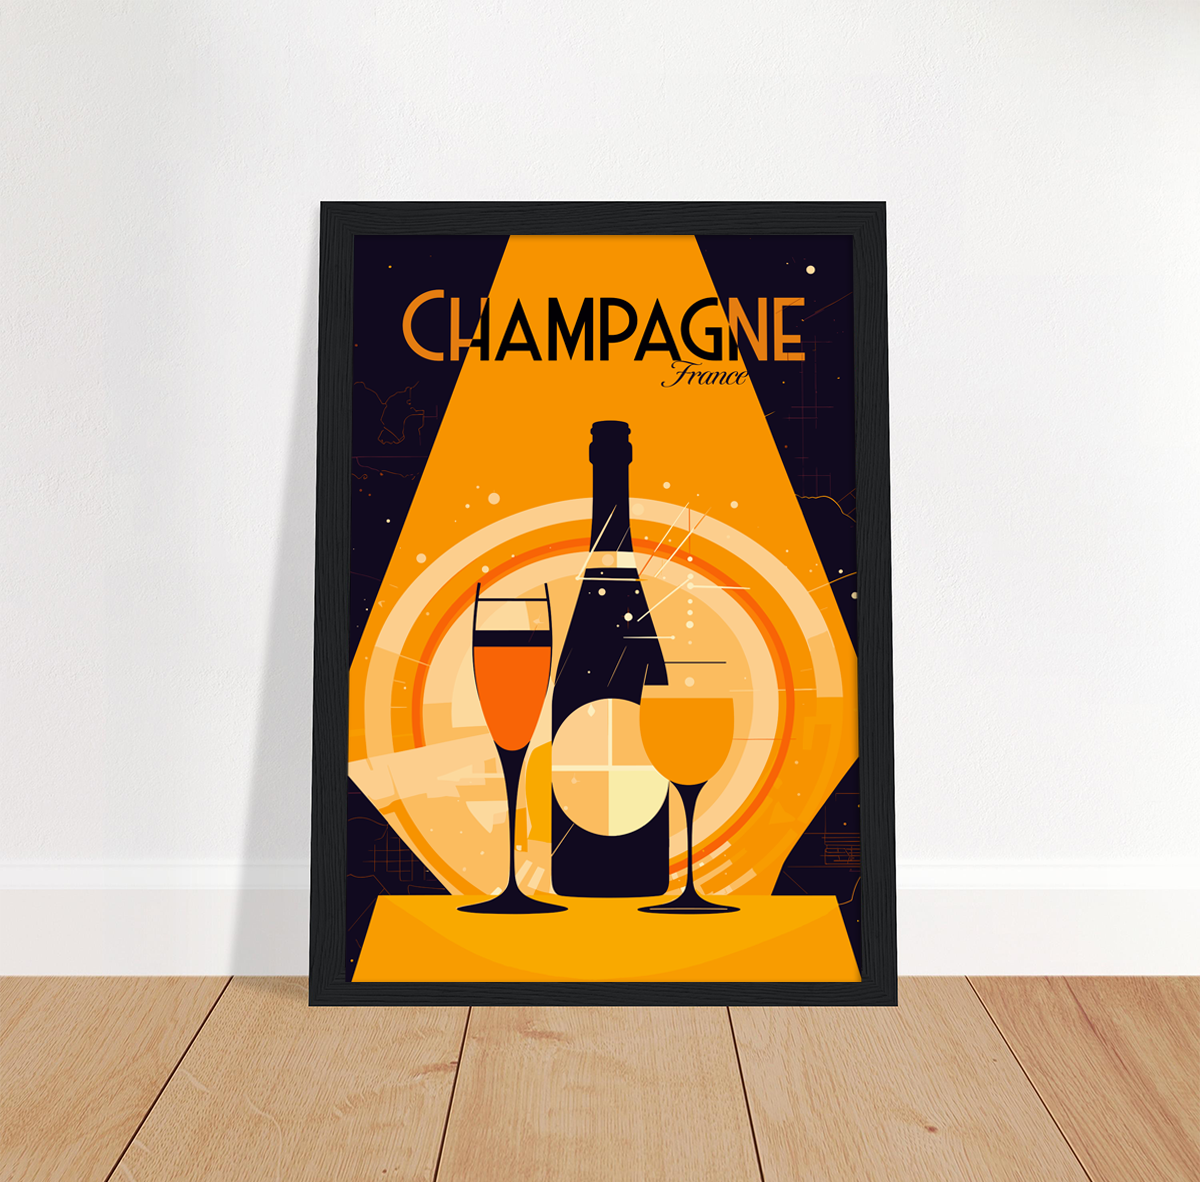 Champagne poster by bon voyage design